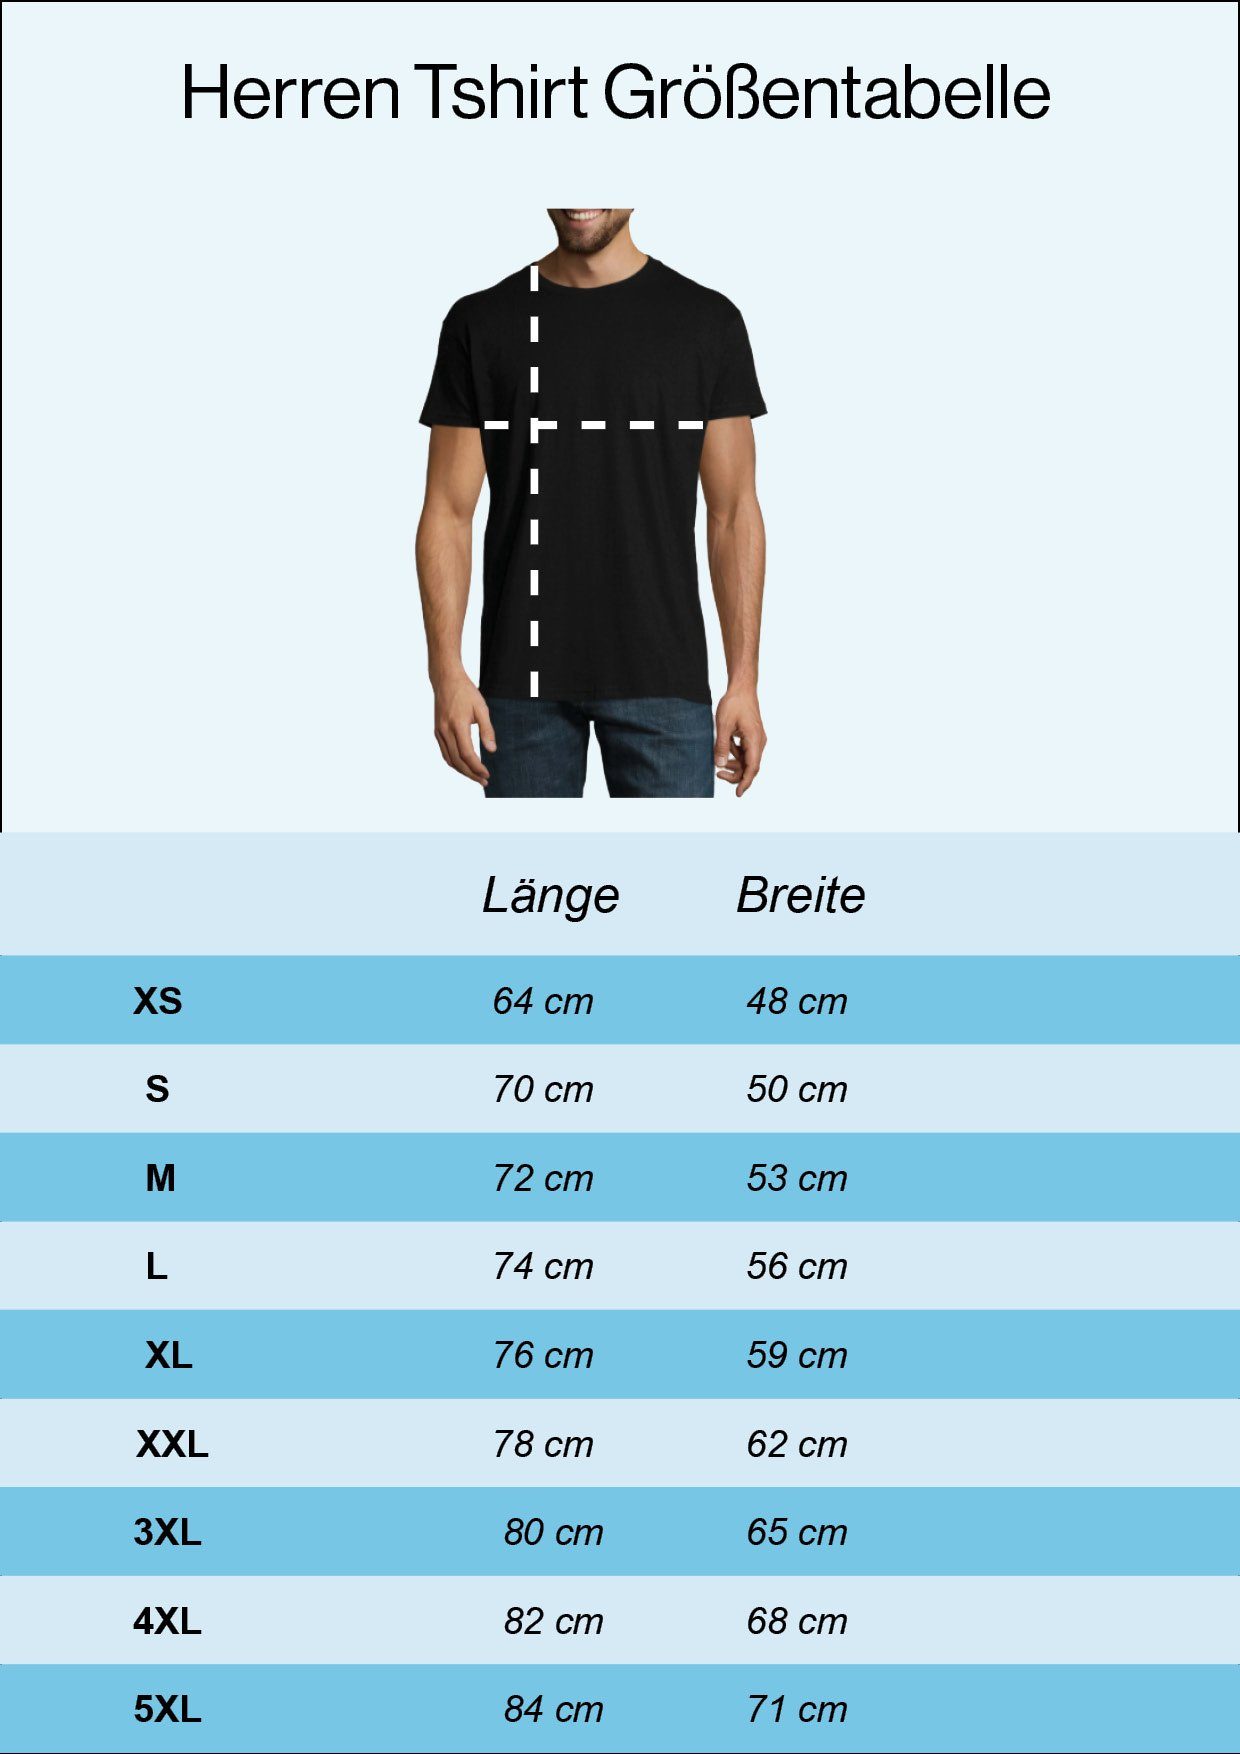 Shirt in mit Designz Legende T-Shirt Frontdruck Rente Youth geht Die Trendigem Herren Navy